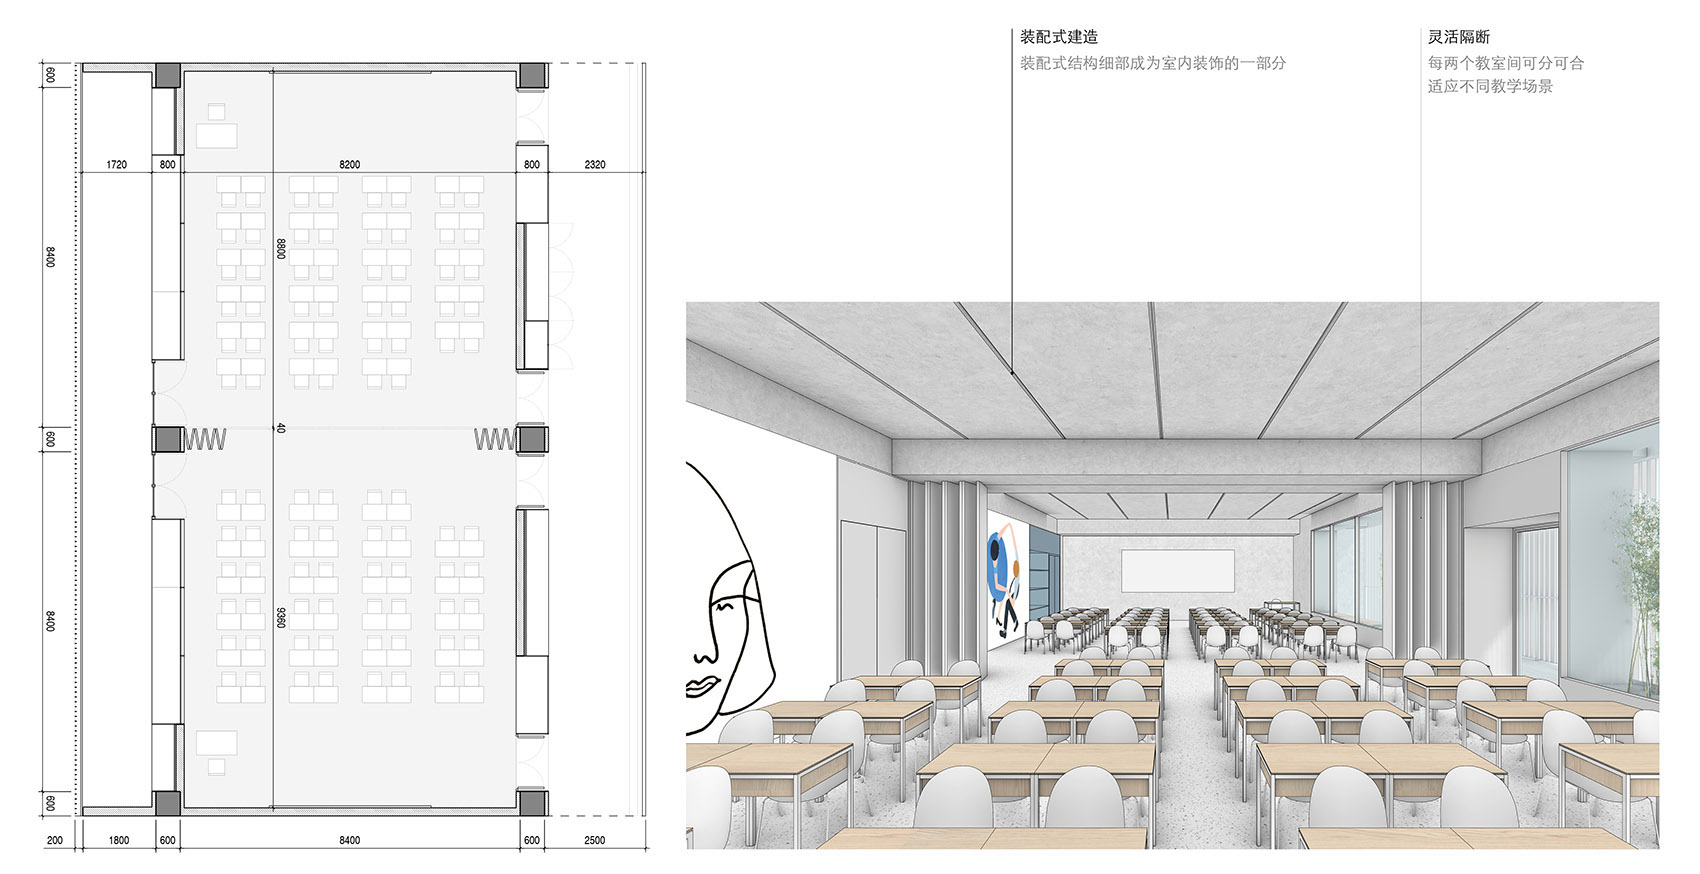 重叠校园：莲花小学校园设计，深圳/高密度垂直分区式校园-54